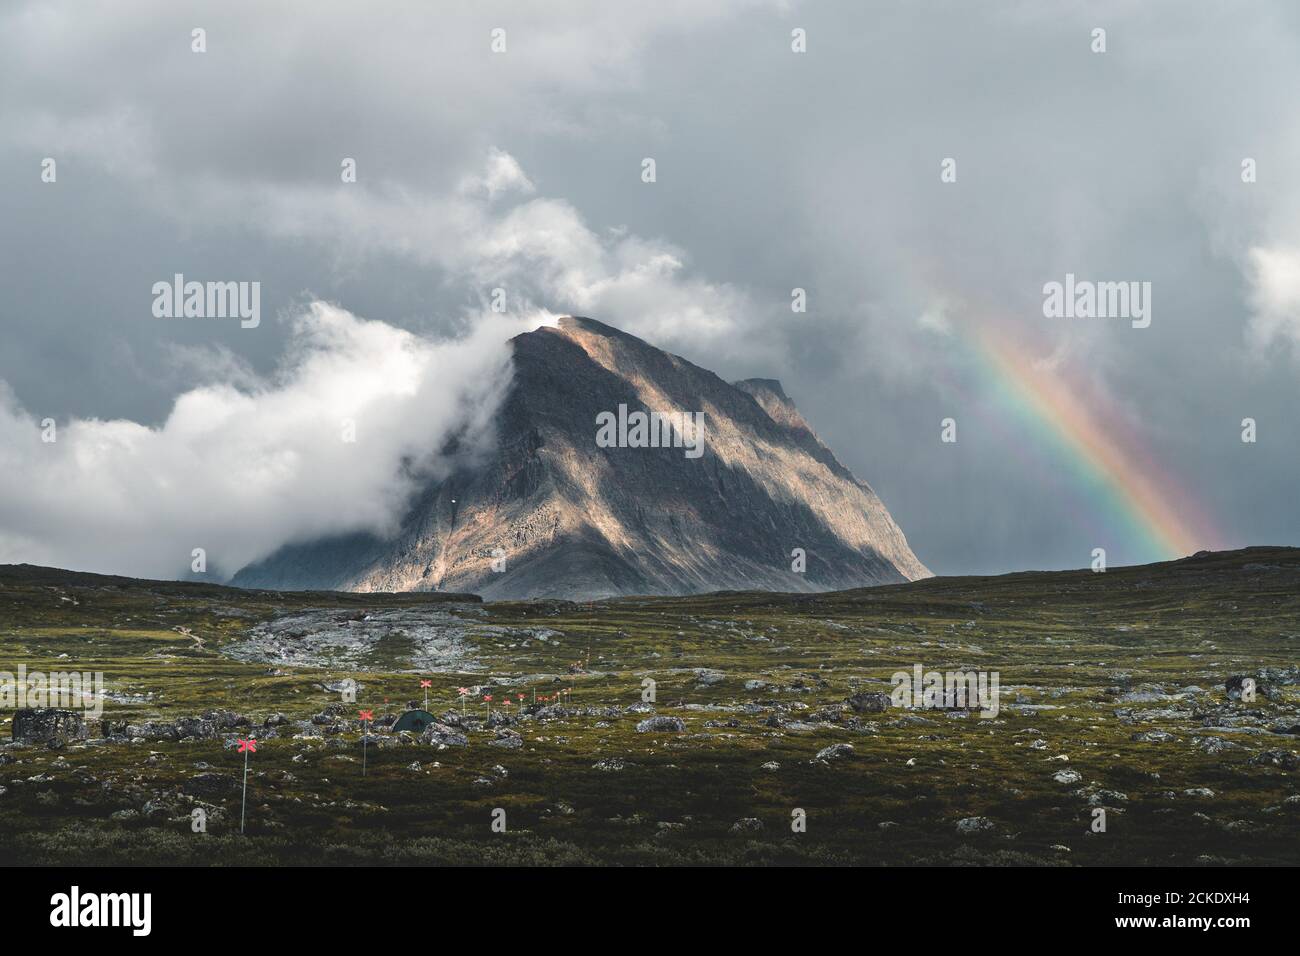 Montañas suecas cubiertas de nubes con arco iris Foto de stock